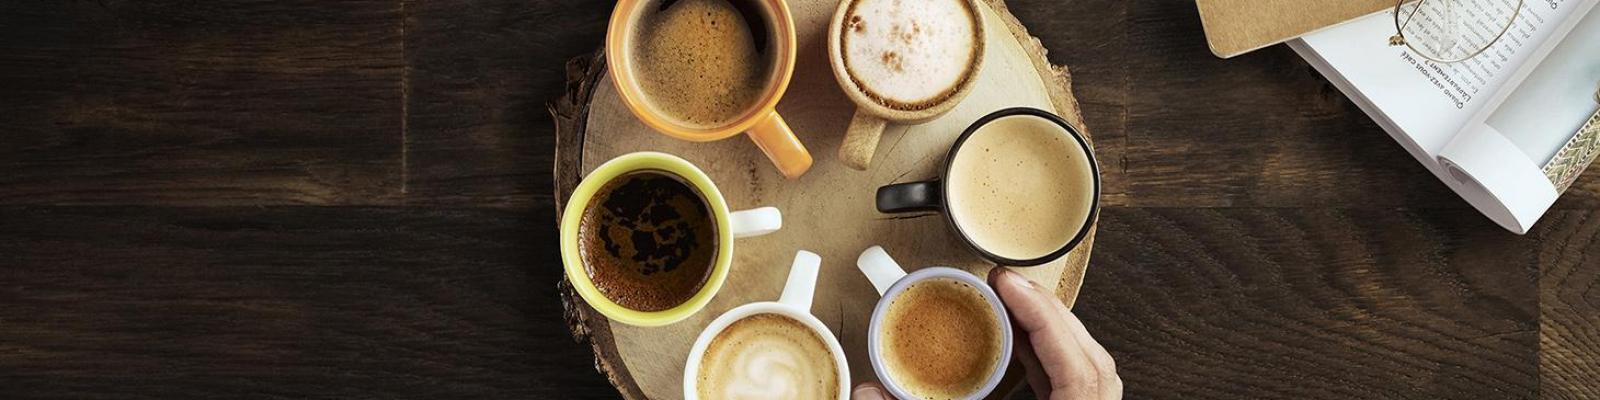 Nuestra guía sobre la degustación de café